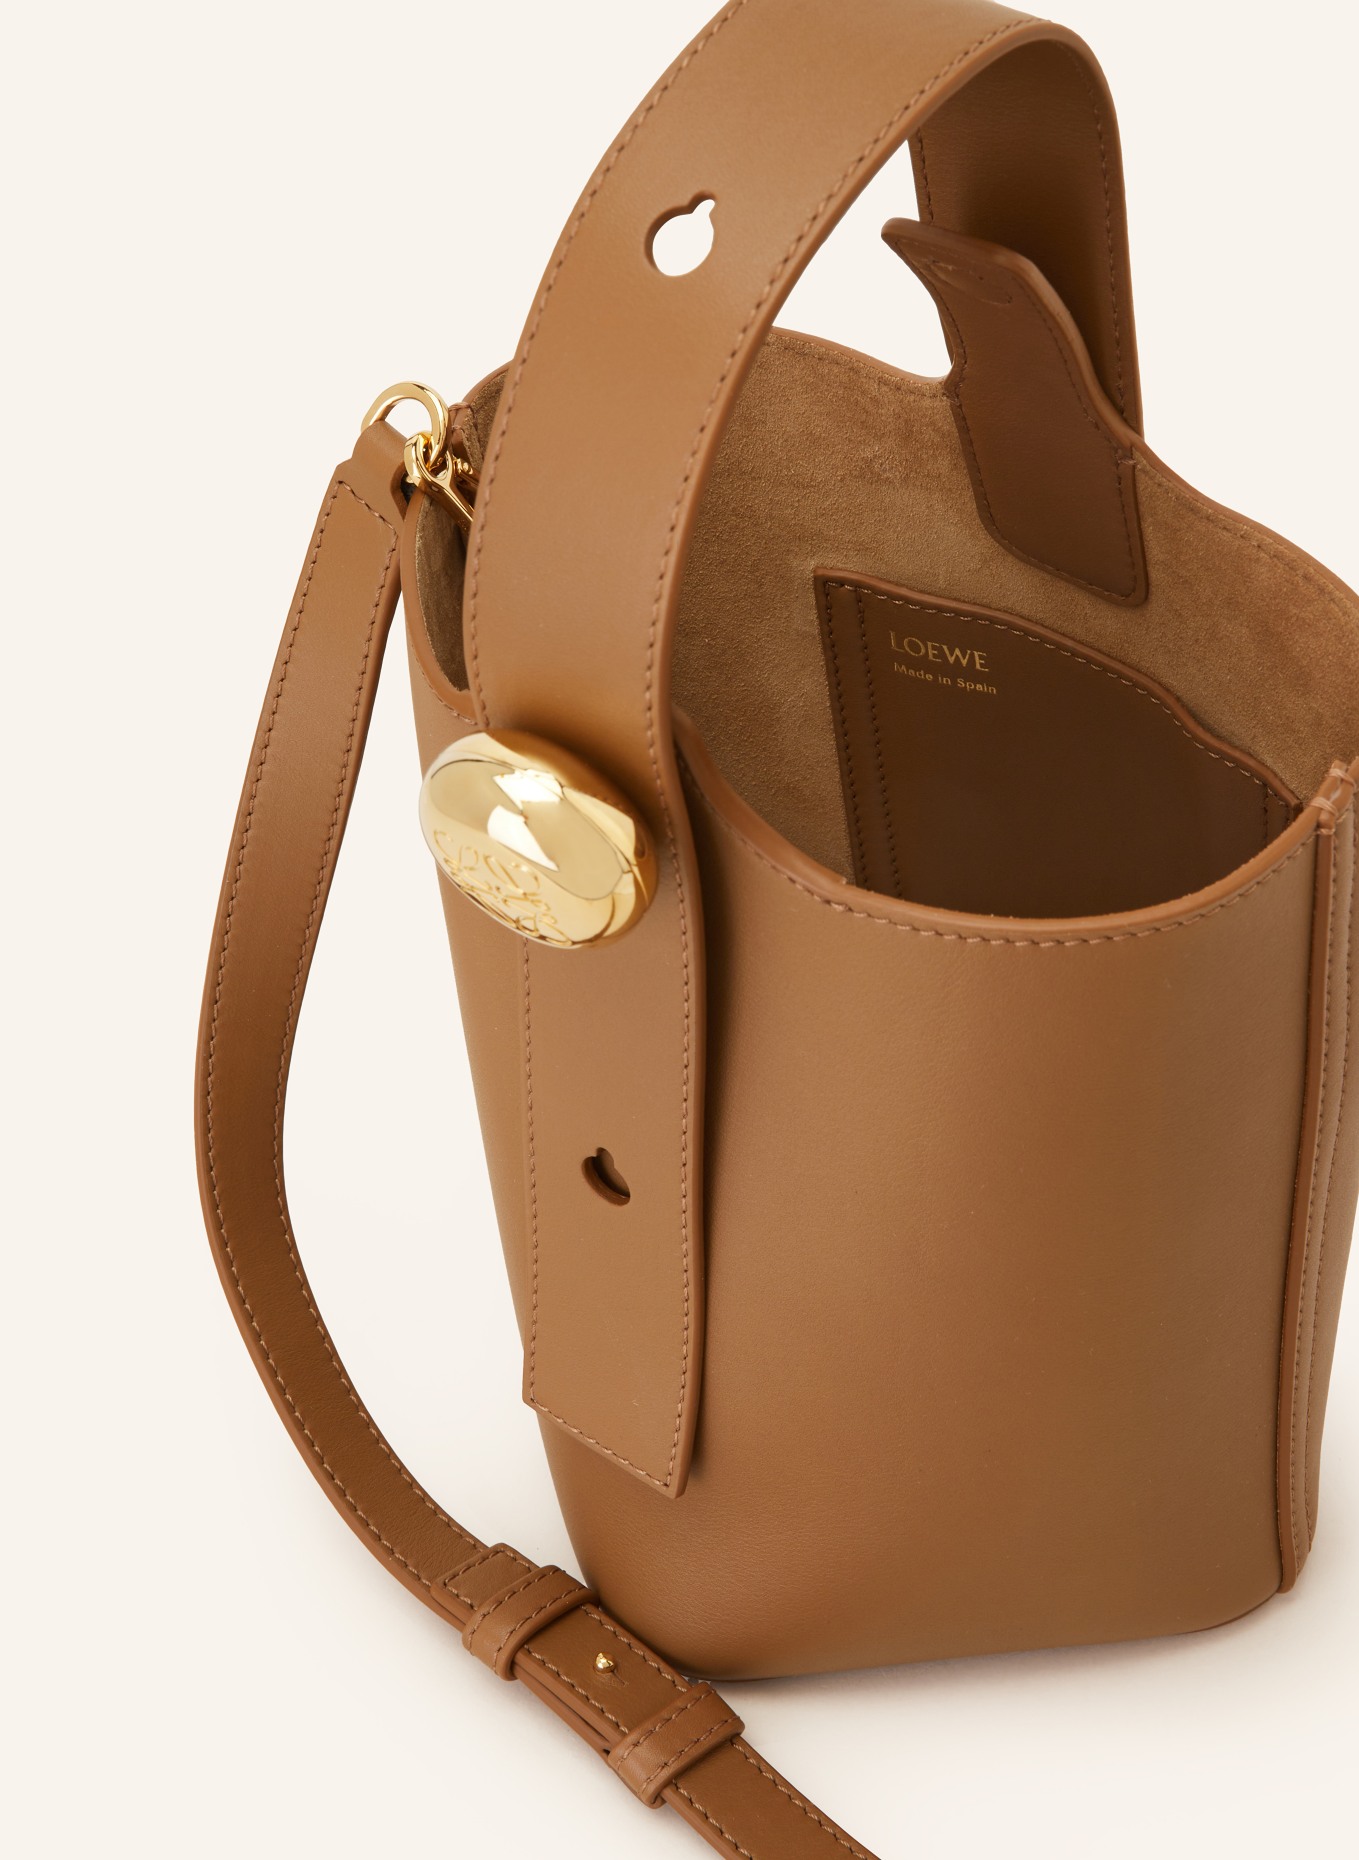 LOEWE Handtasche PEBBLE BUCKET MINI, Farbe: CAMEL (Bild 3)